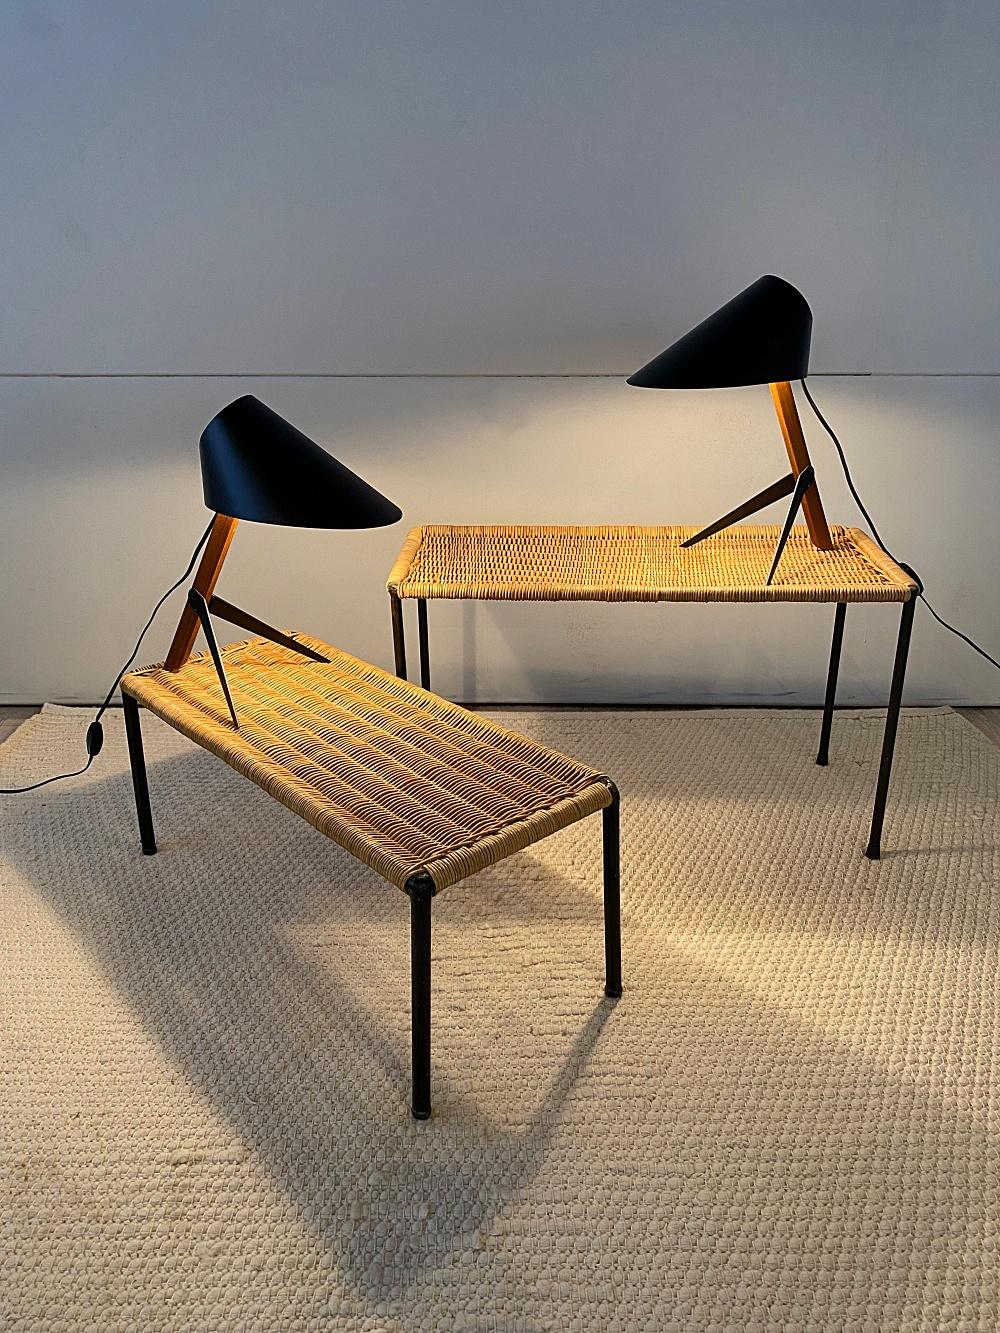 Magnifique et authentique table basse ou table d'appoint en rotin, fabriquée par Carl Aubck Werksttte dans les années 1950, Vienne. Les cadres sont en acier laqué noir avec un plateau en rotin tressé. Les tables peuvent être utilisées à l'intérieur